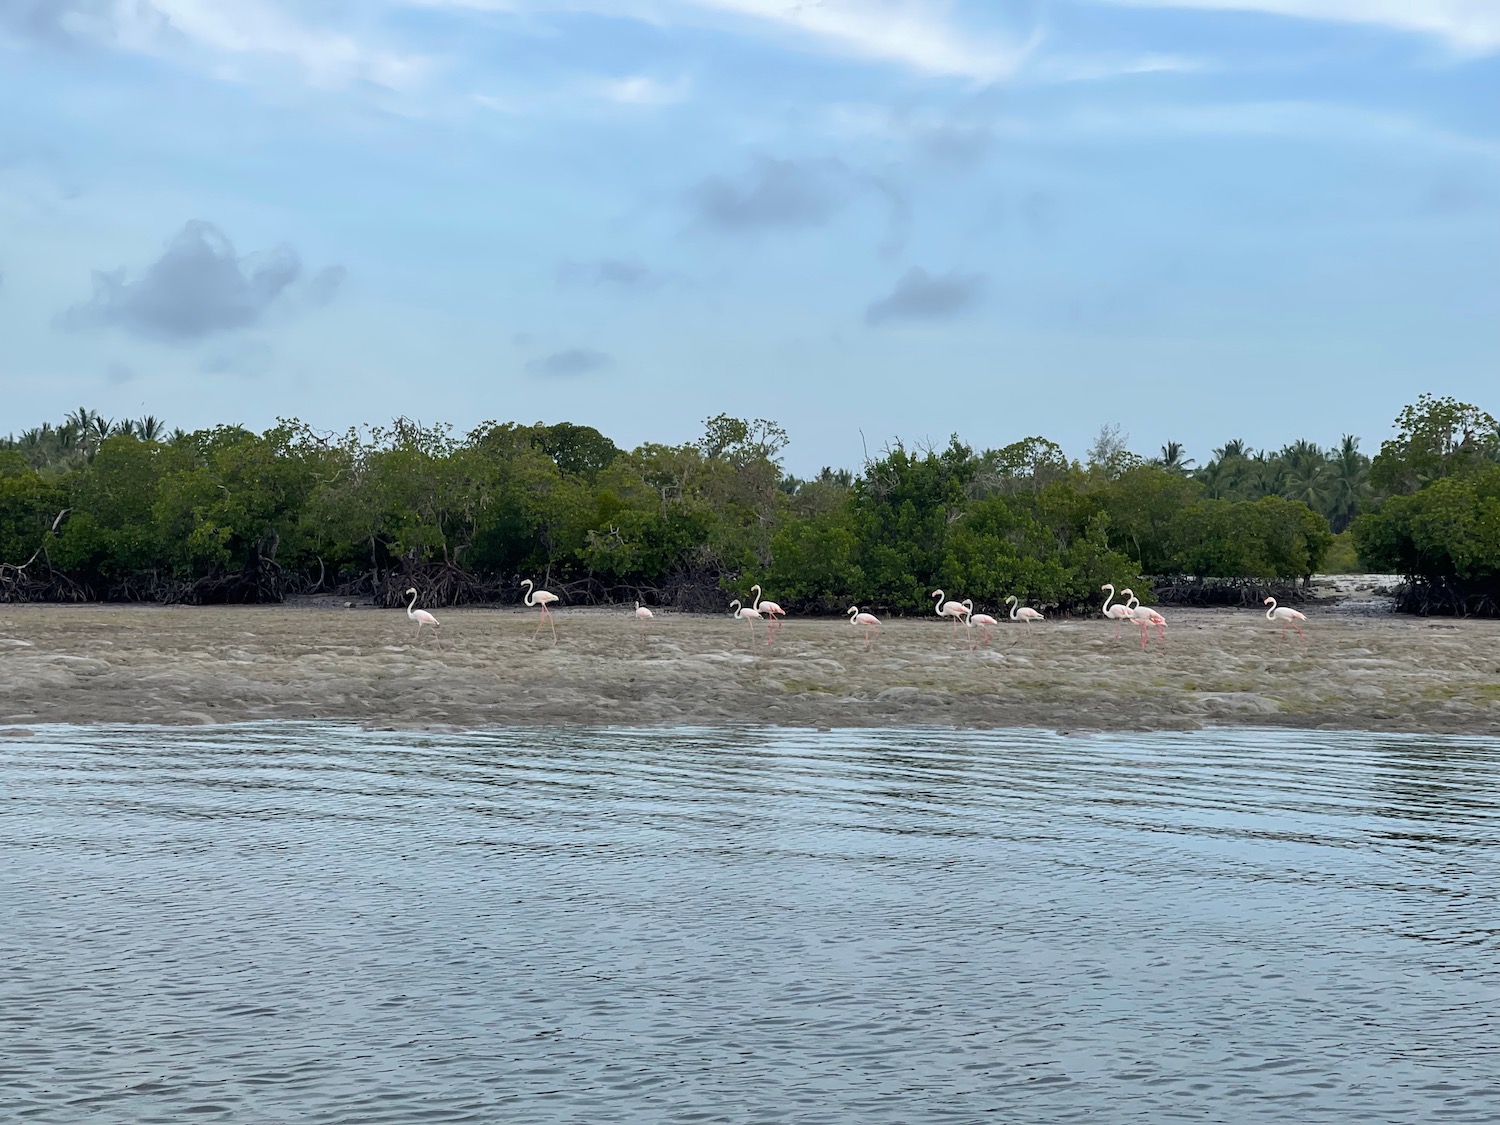 a group of flamingos on a beach